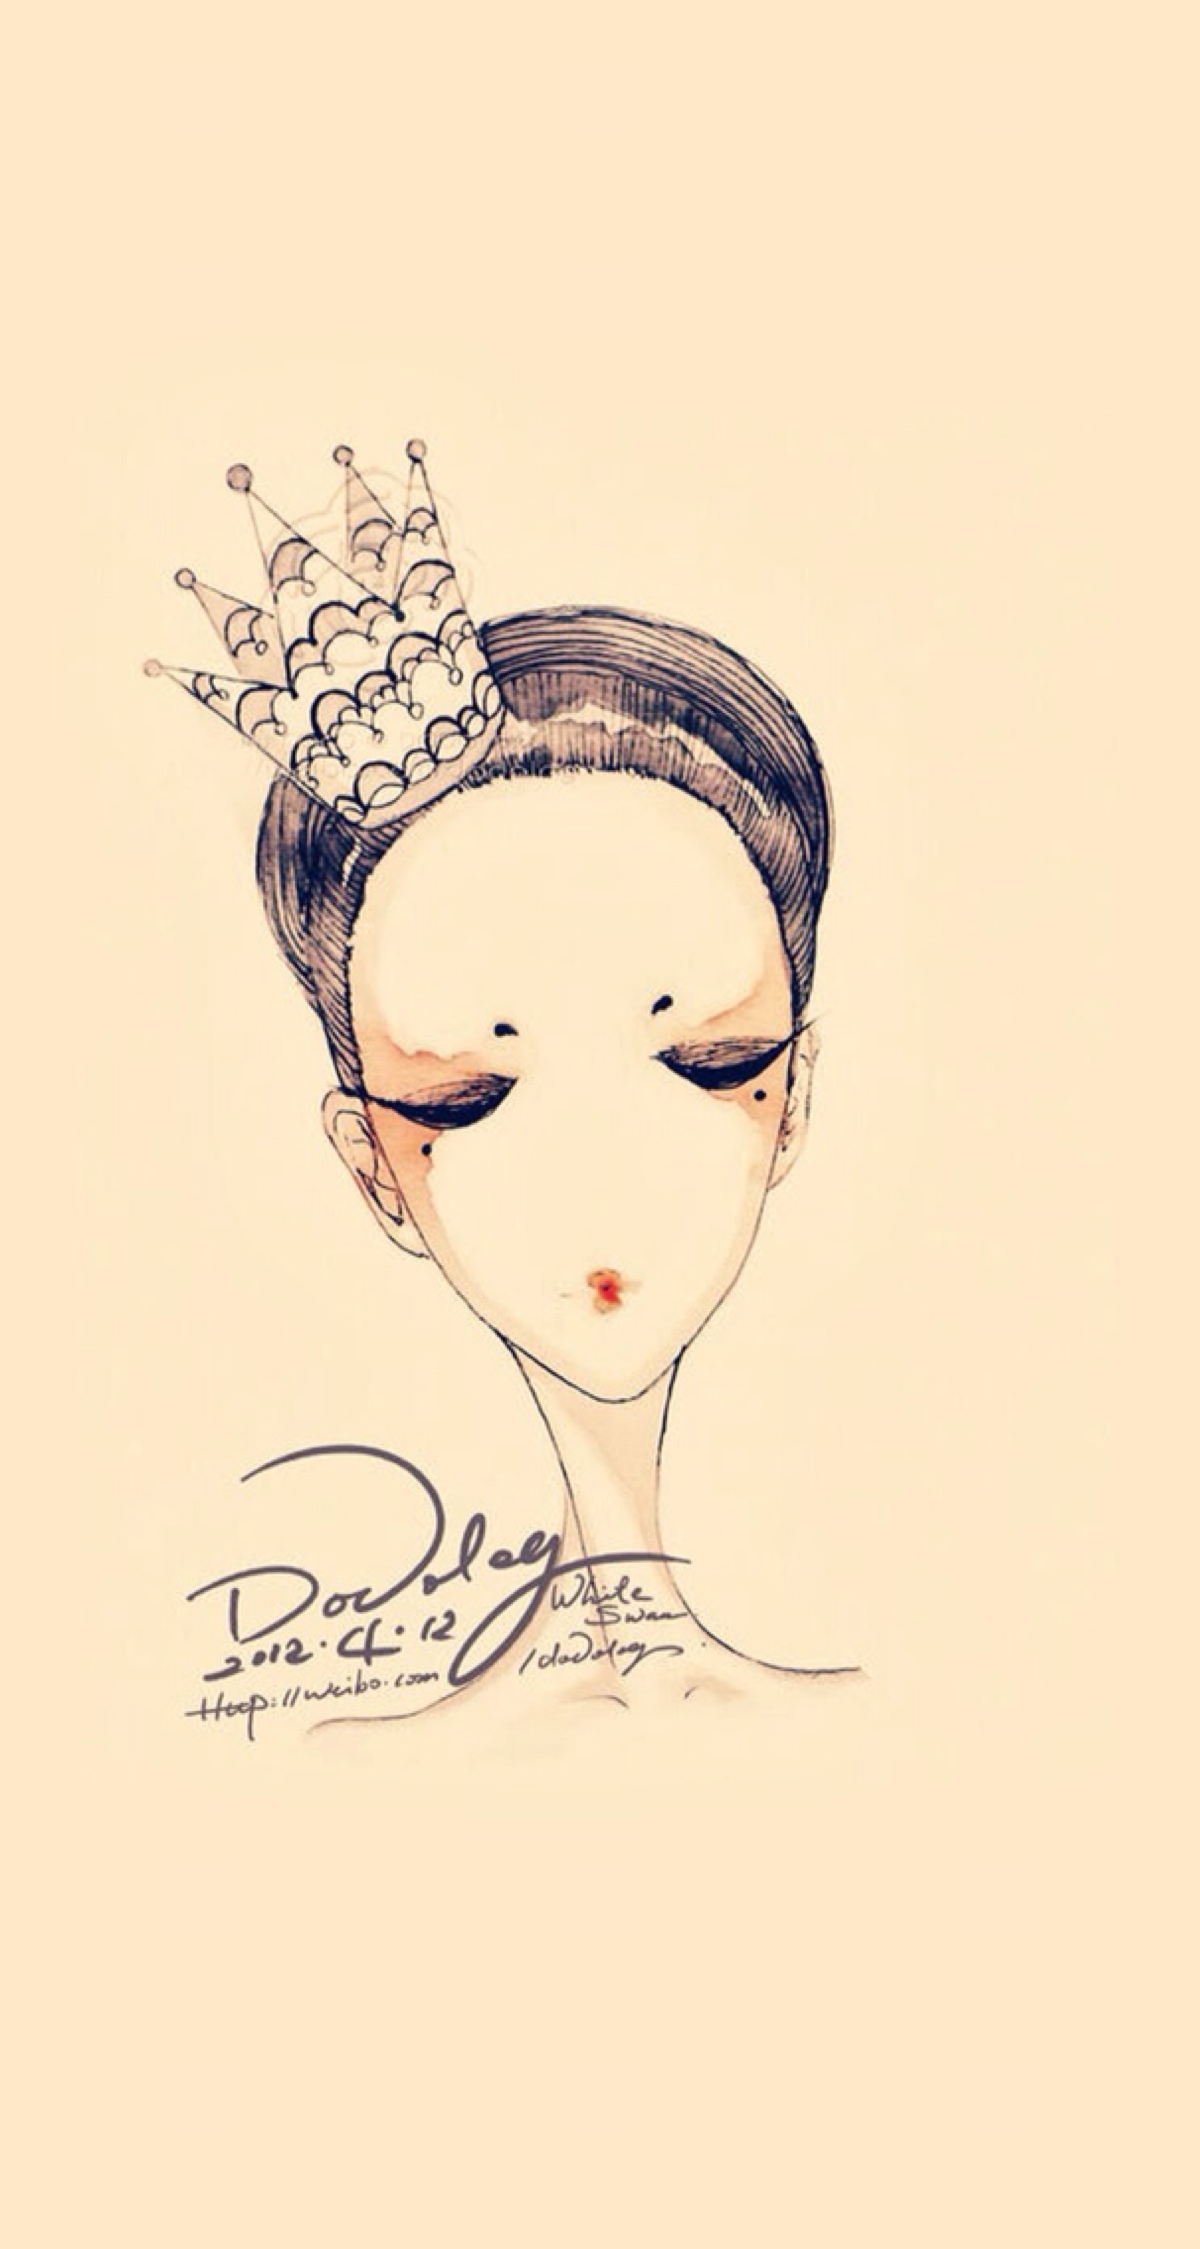 简单线条 插图插画 绘图手绘 铅笔彩铅 闭眼王冠皇冠 女王公主 唯美